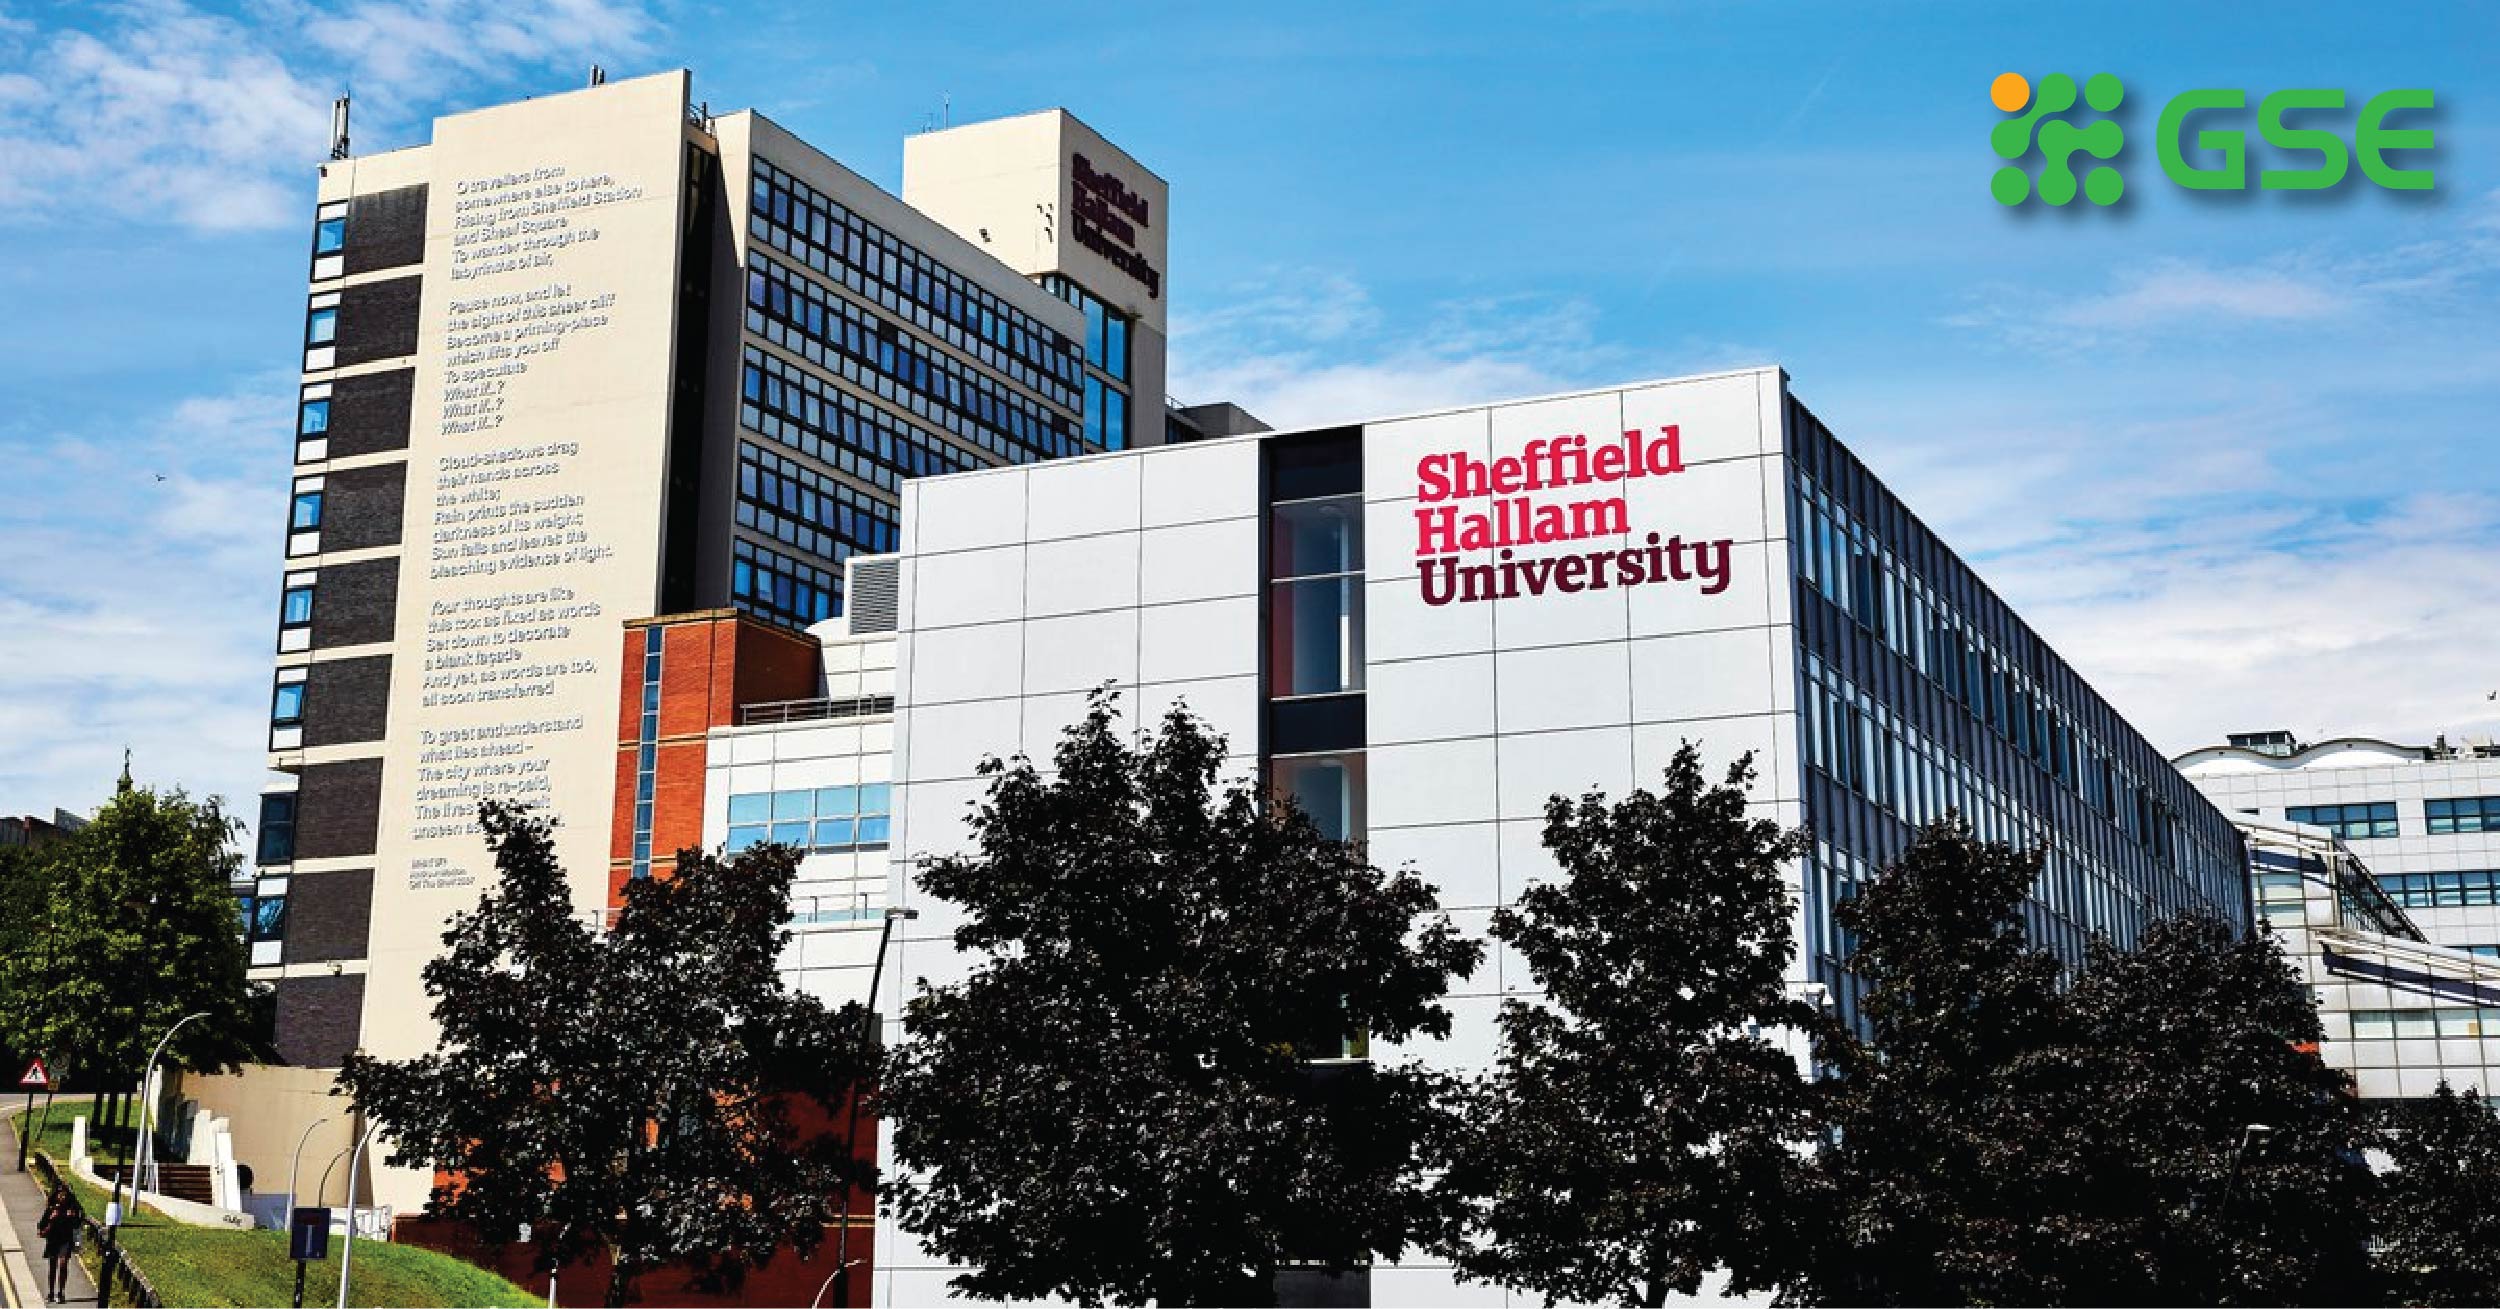 Hội thảo trực tuyến ngành Tài chính toàn cầu từ Sheffield Hallam University